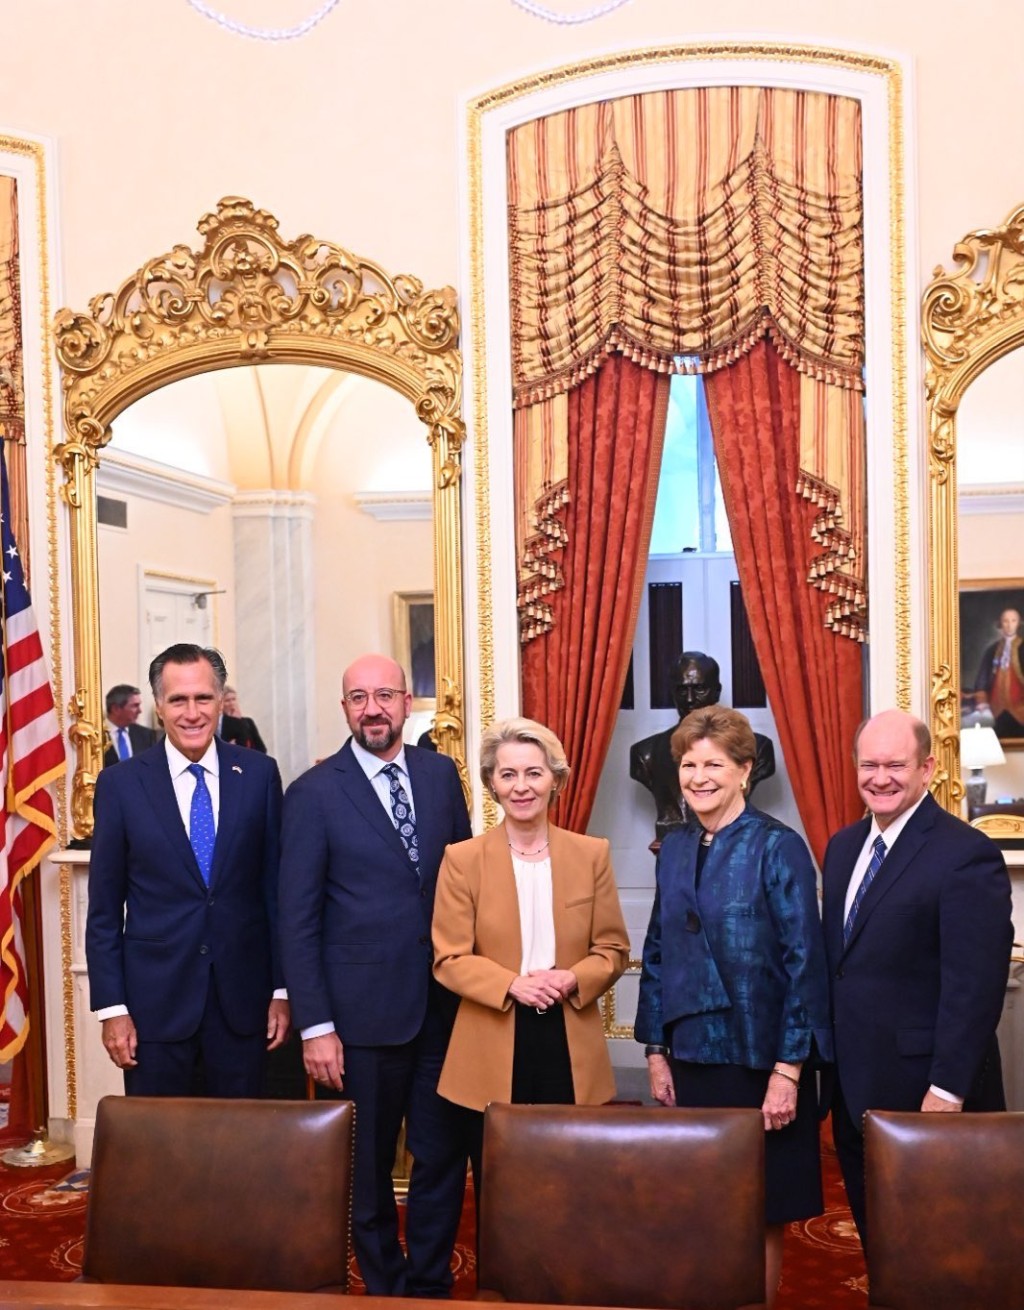 馮德萊恩和歐洲理事會主席米歇爾與美國參議院兩黨代表會面。 X